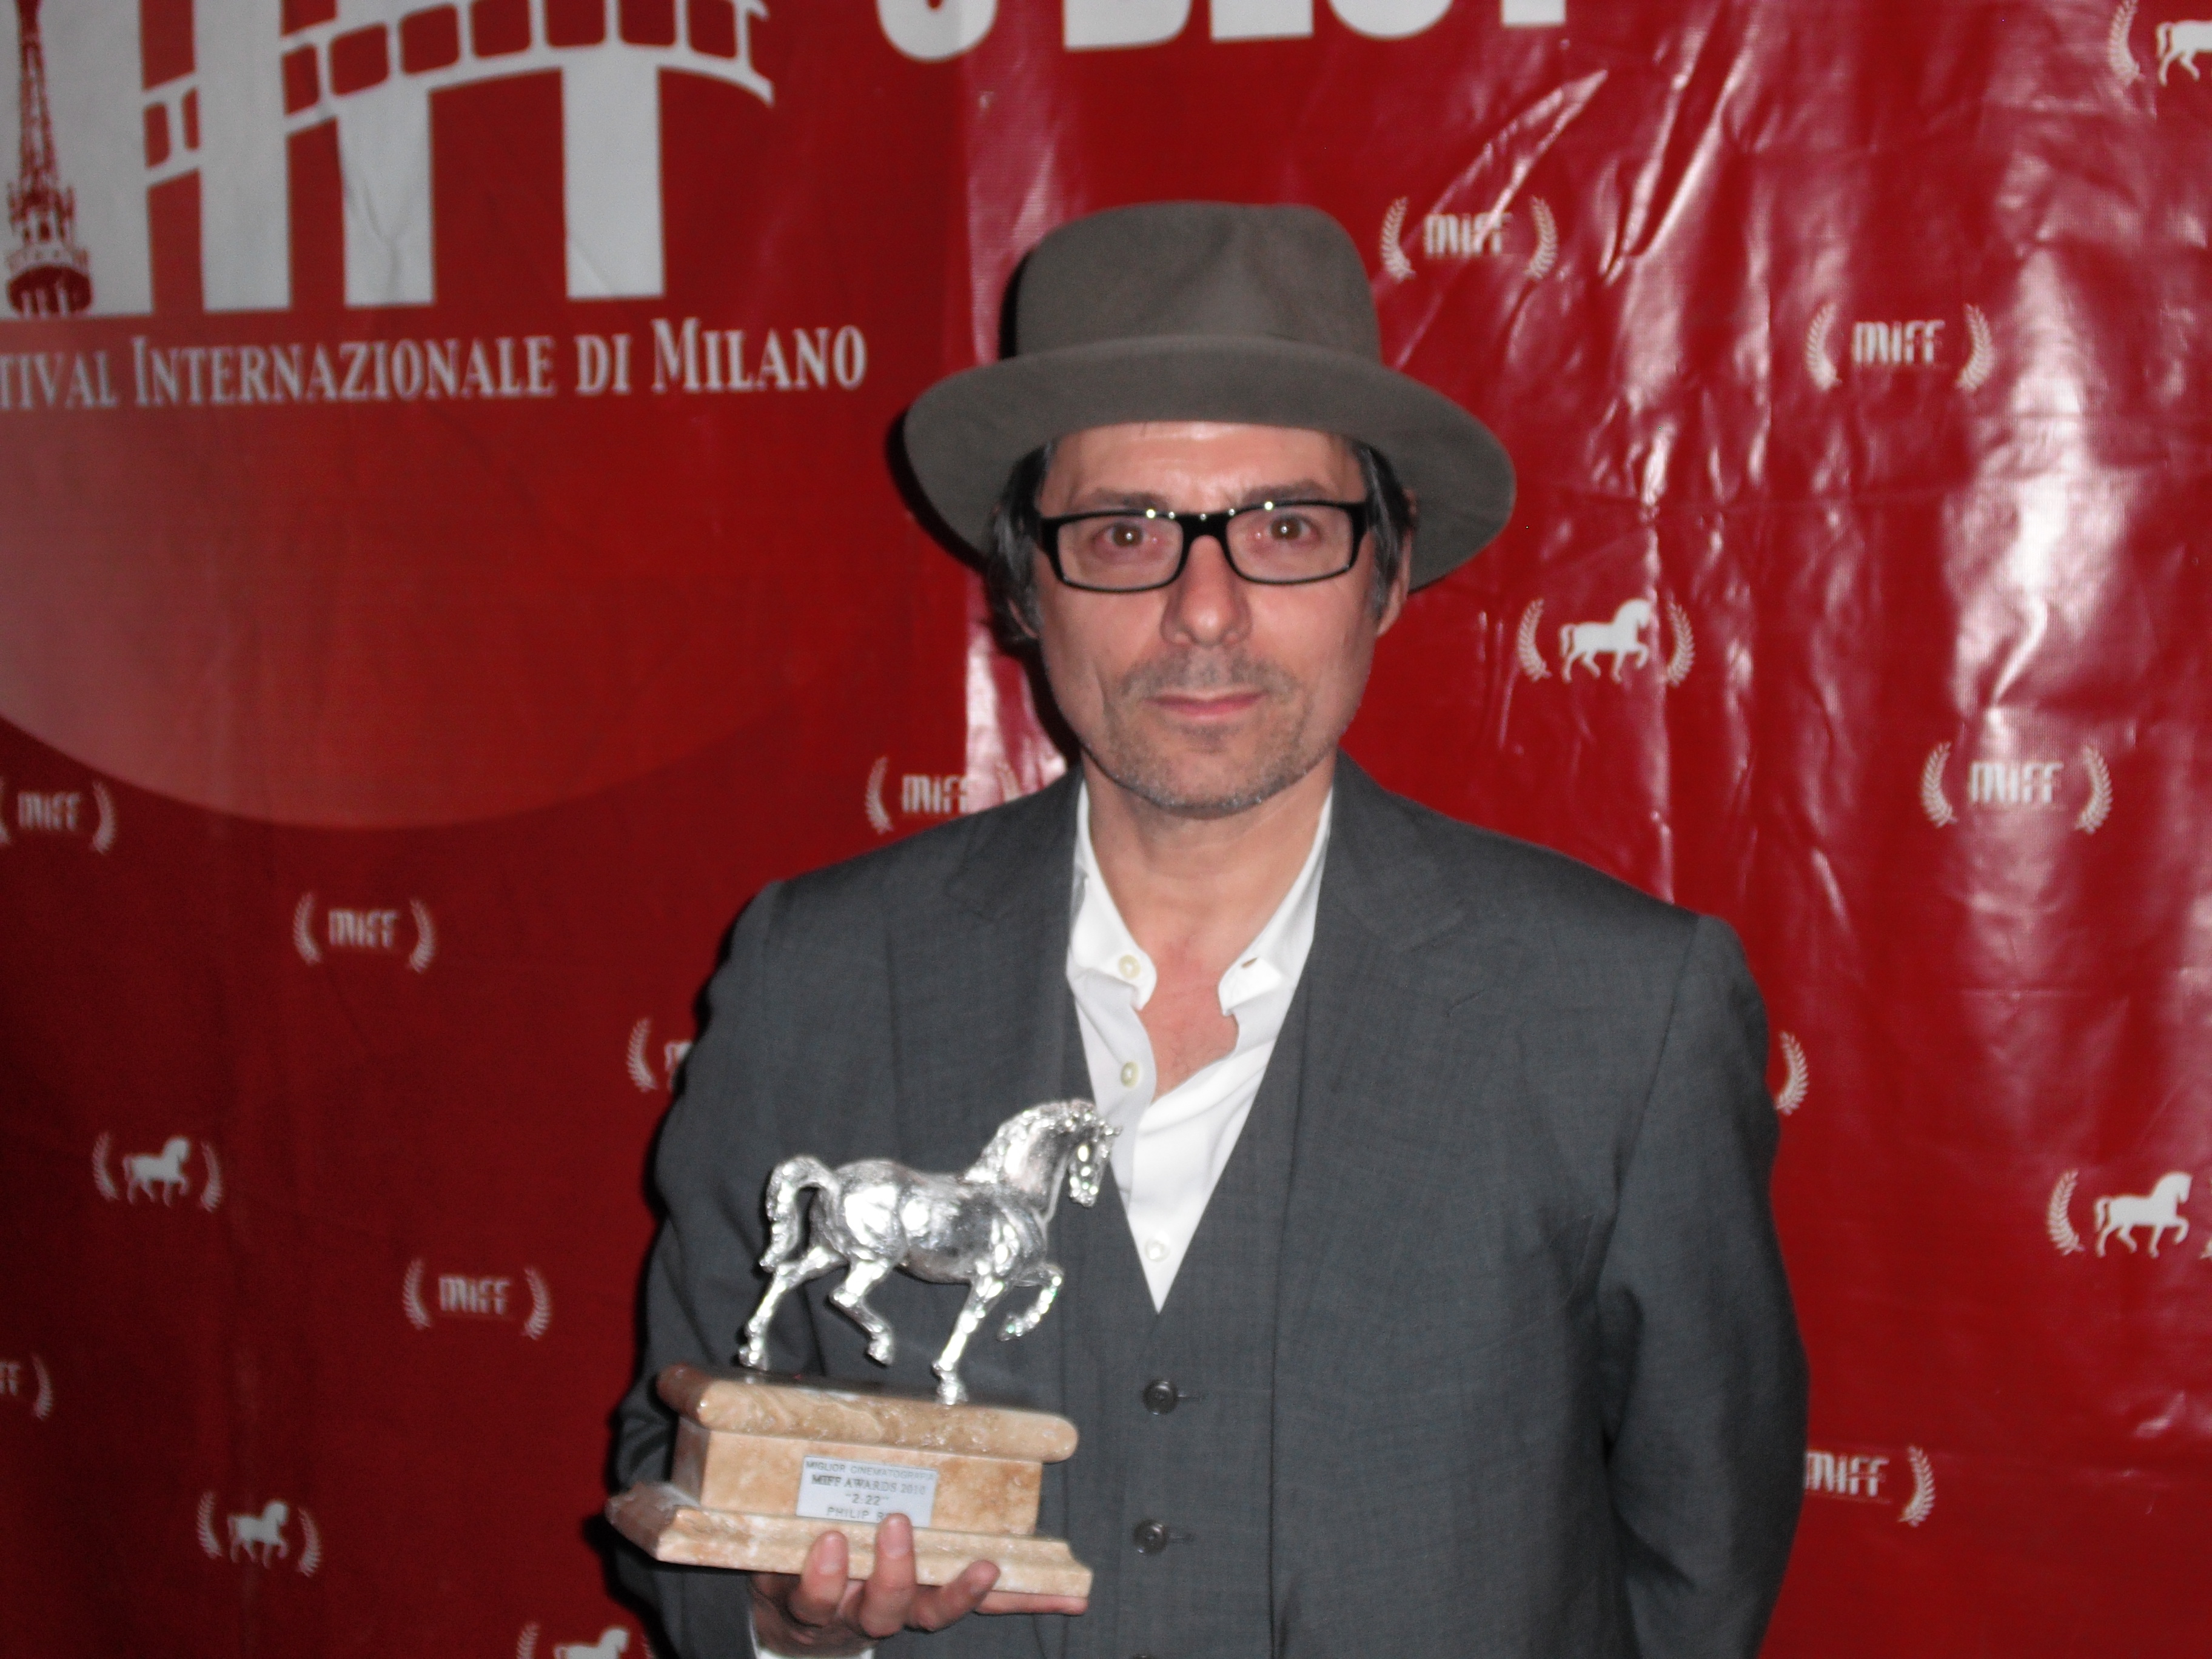 Mick Rossi, 2:22 Milan International Film Festival